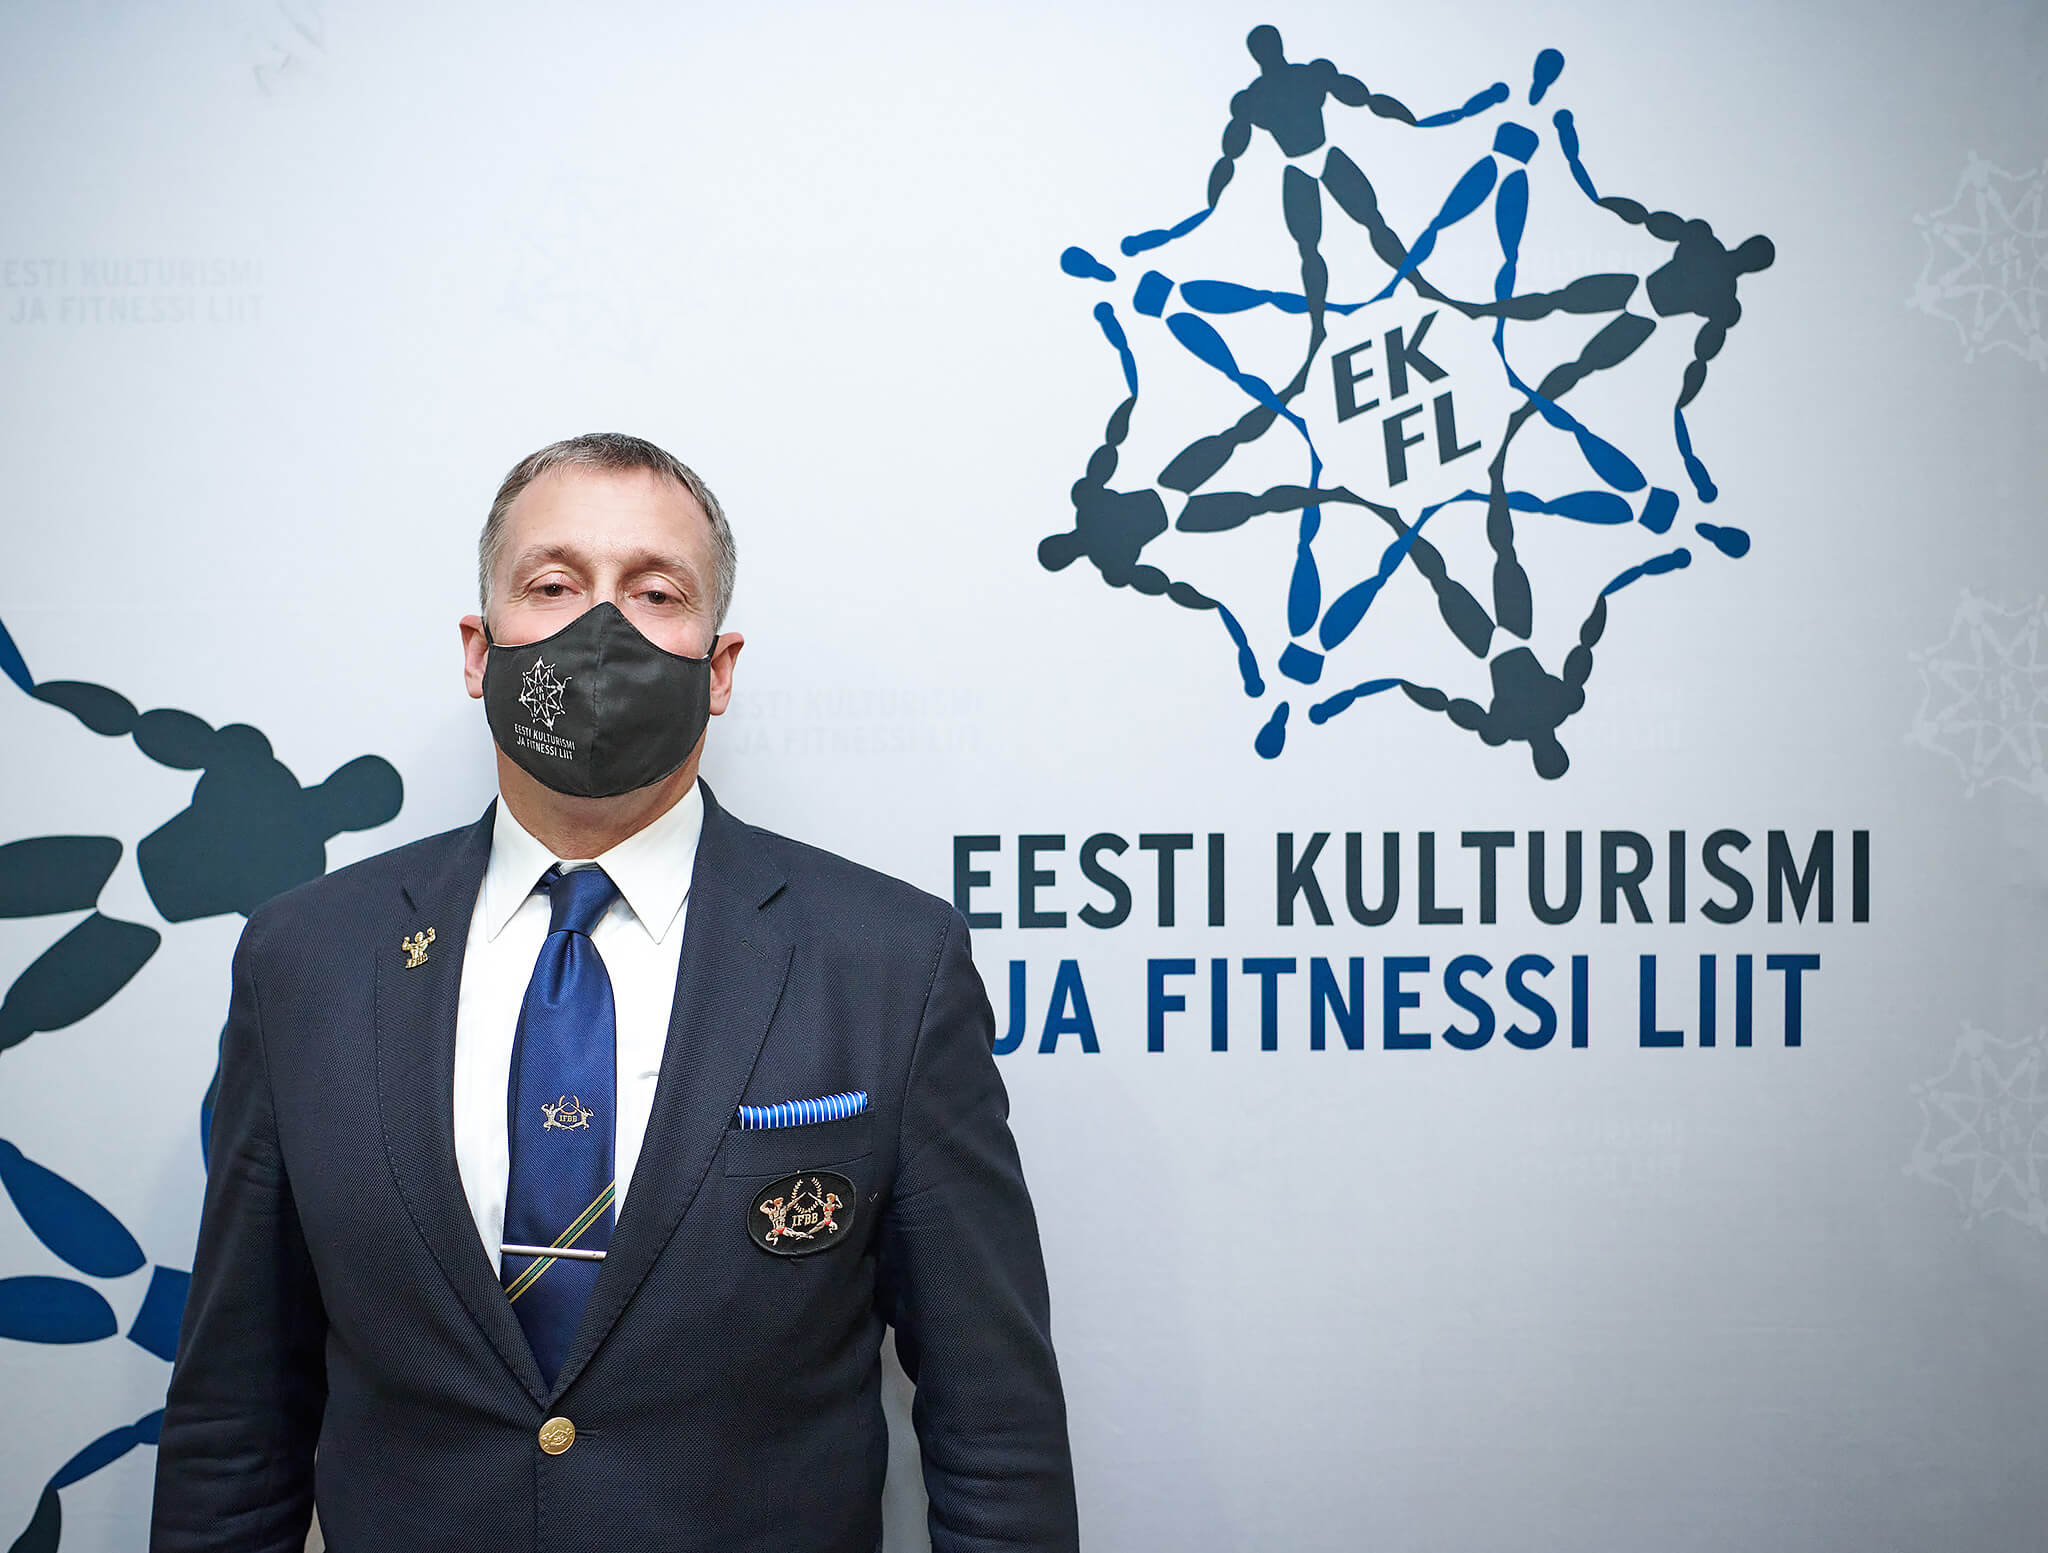 Eesti Vabariigi Peaministrile ning Vabariigi Kriisikomisjonile tehti ettepanek hoida spordiklubid avatuna